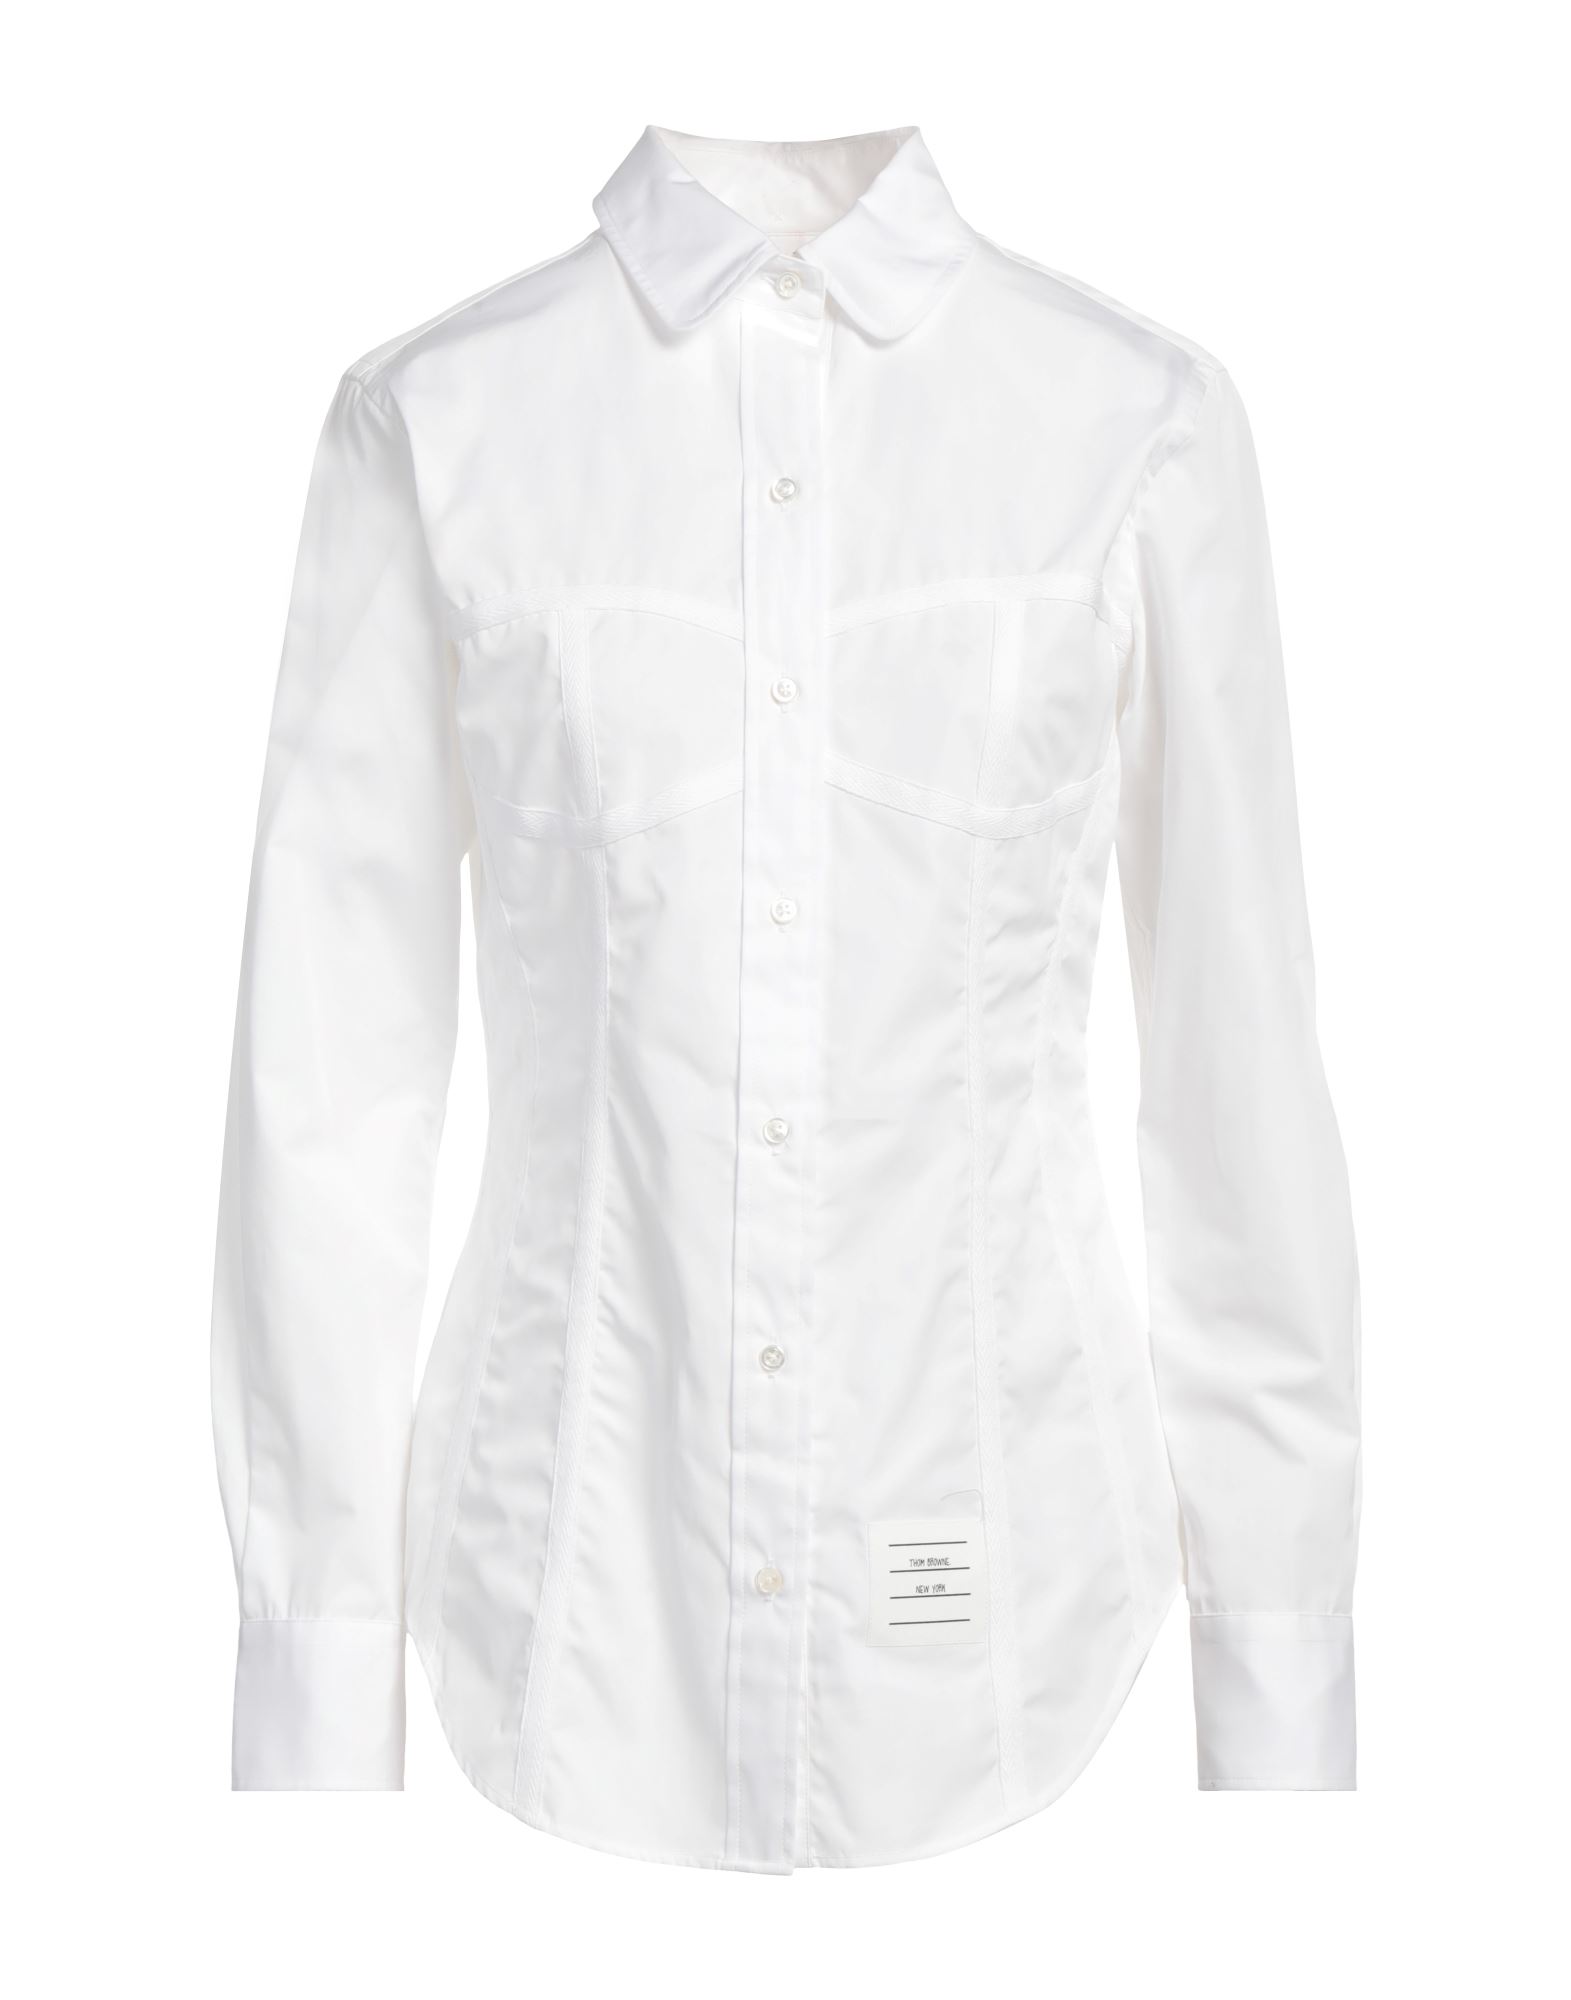 Thom Browne Woman Shirt White Size 4 Cotton